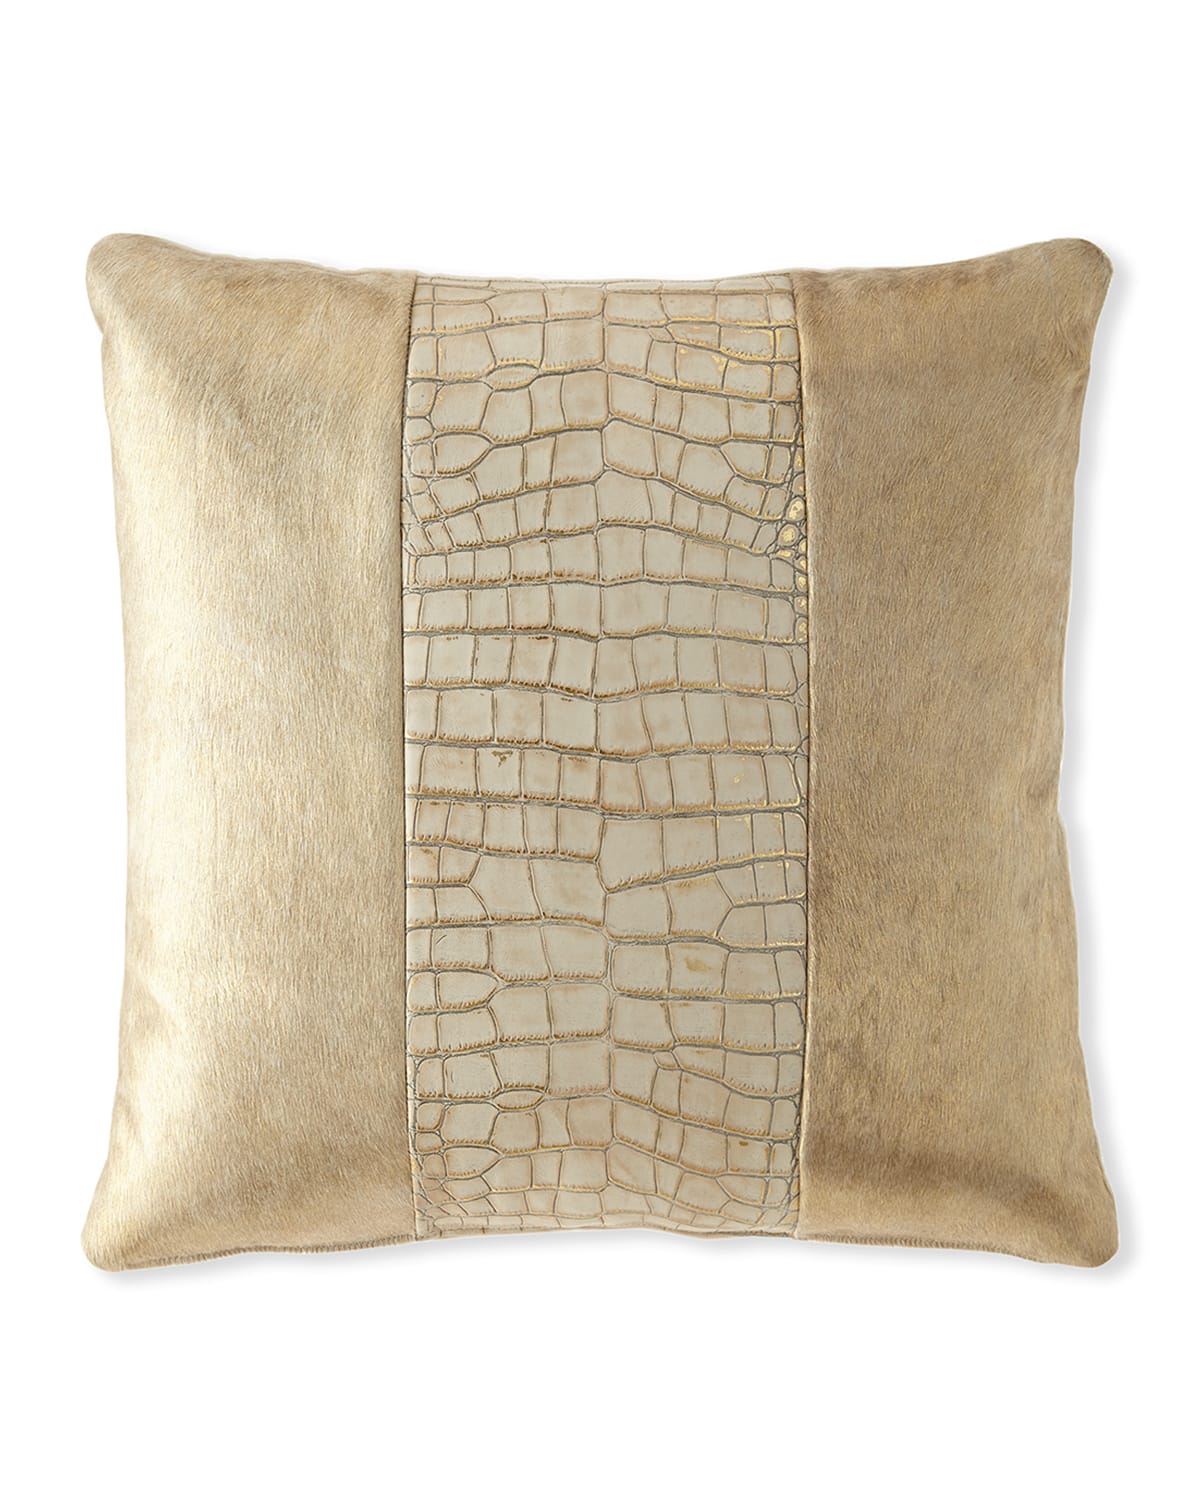 Massoud Colourblock Croc Pillow, 22"sq.